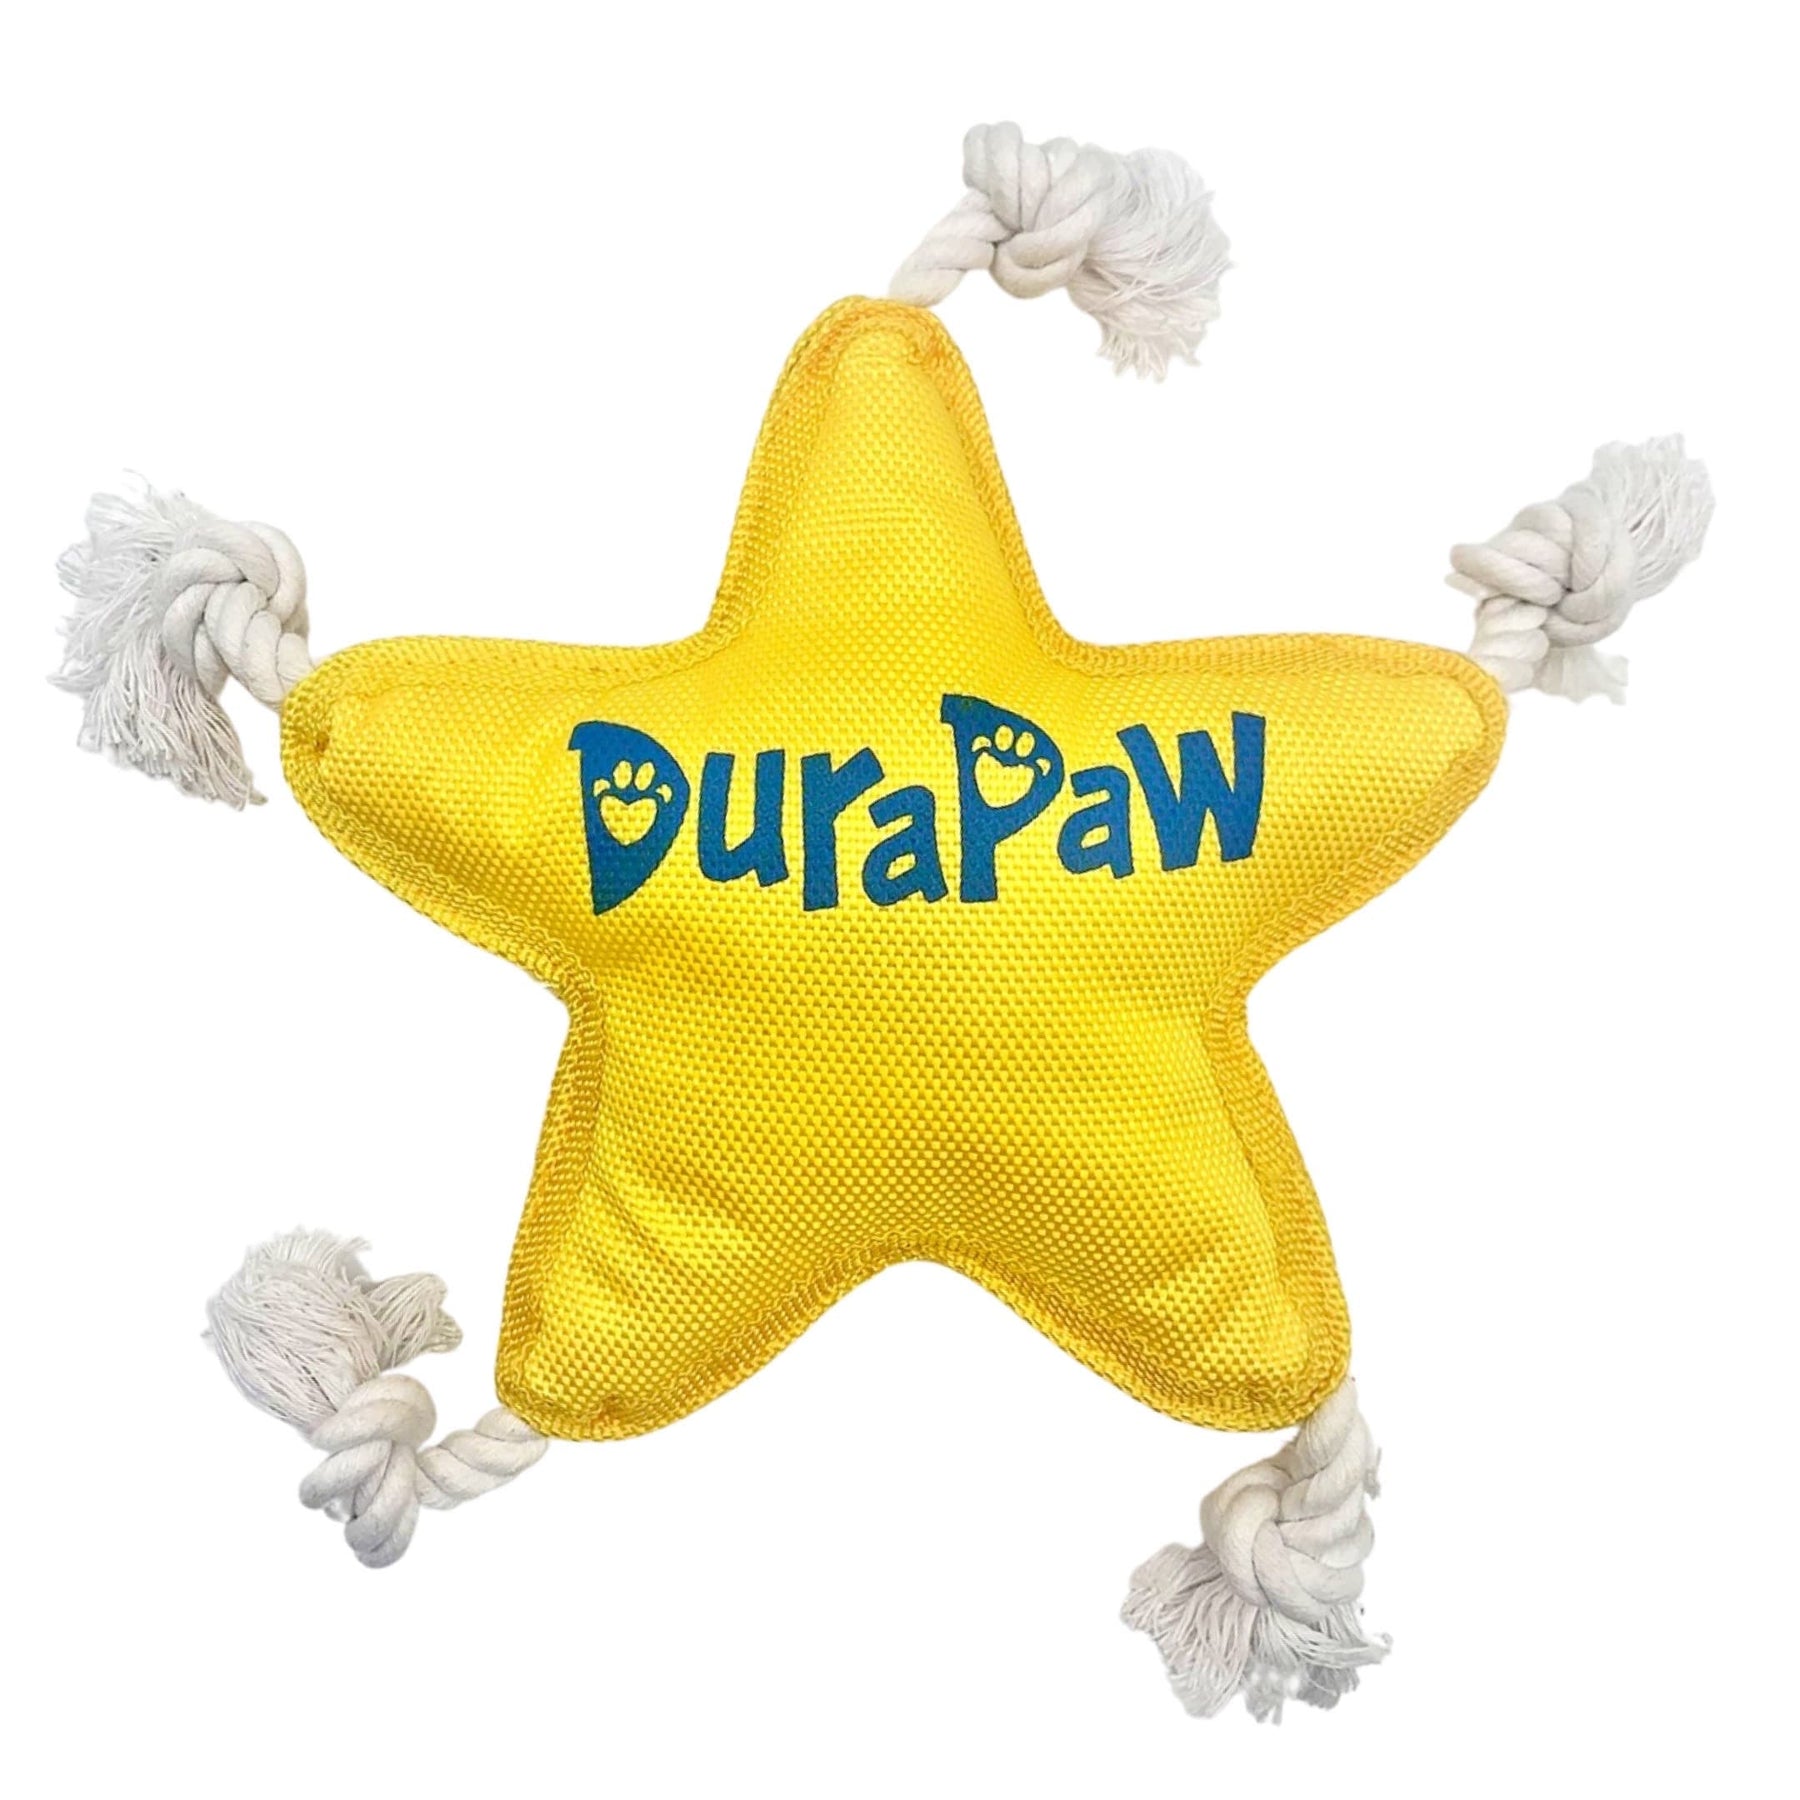 DuraPaw Durable Dog Toys Canada